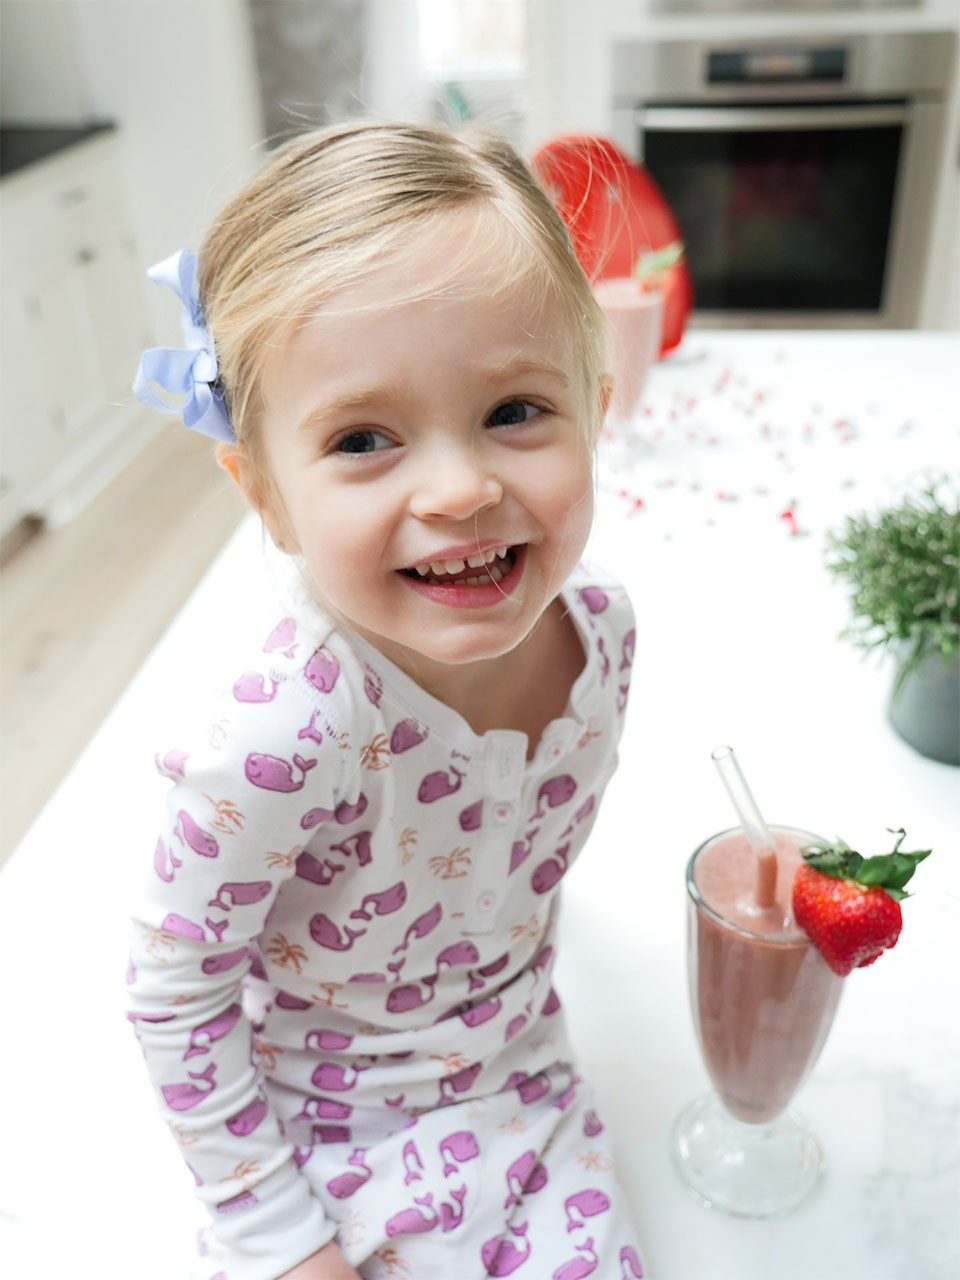 Eva Amurri shares a recipe for Chocolate-Covered Strawberry Smoothies